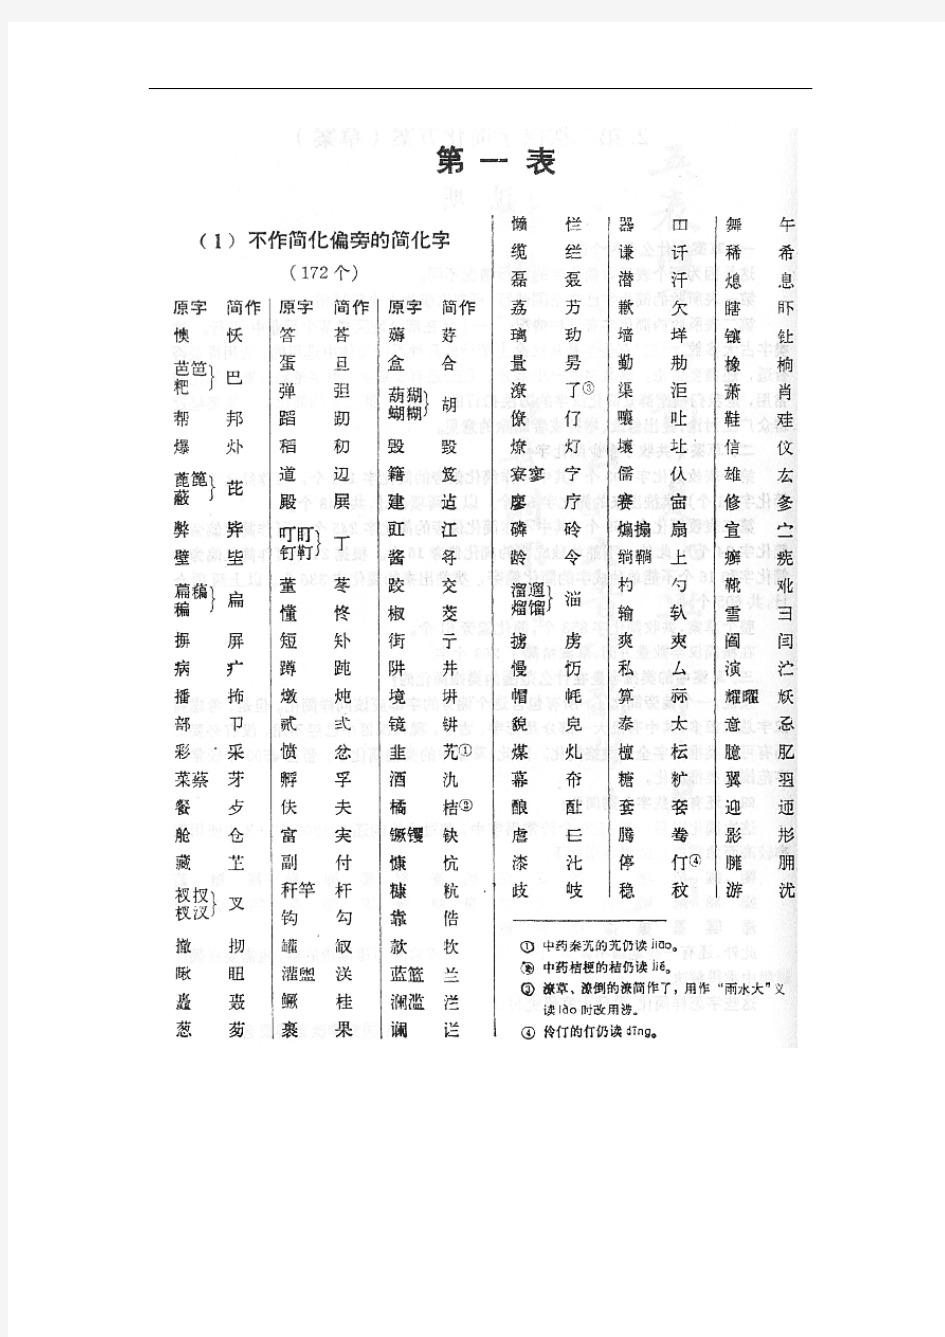 《第二次汉字简化方案》中的简化汉字